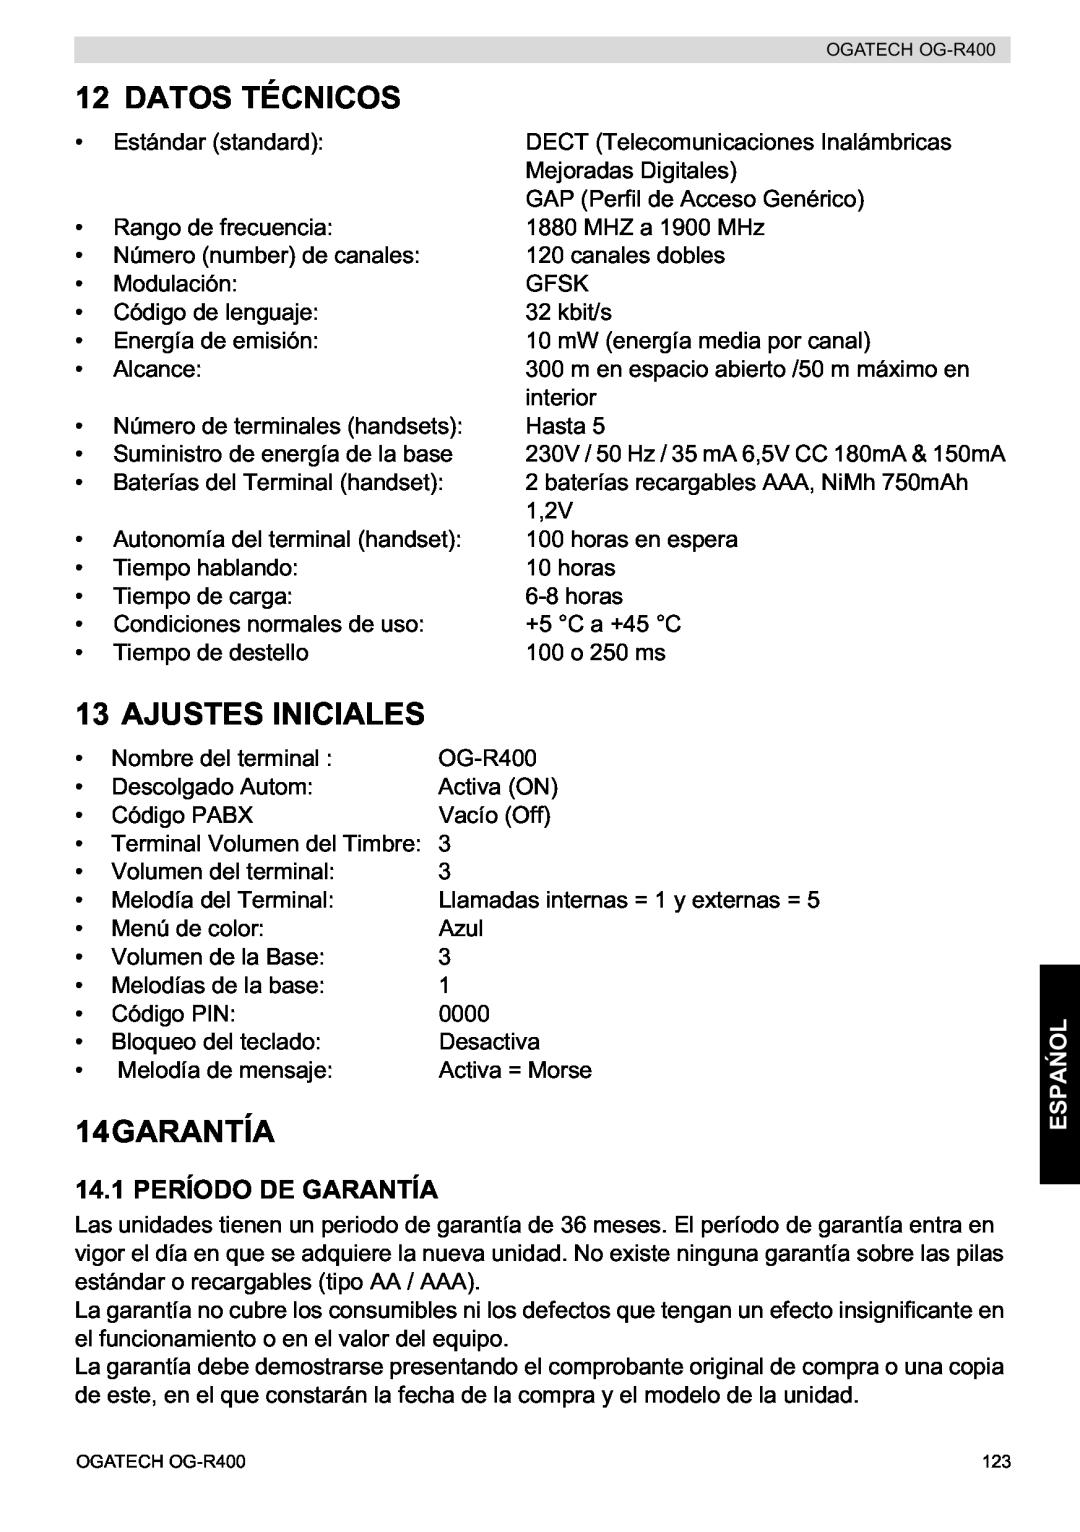 Topcom OG-R400 manual Datos Técnicos, Ajustes Iniciales, 14GARANTÍA, 14.1 PERÍODO DE GARANTÍA, Espa 